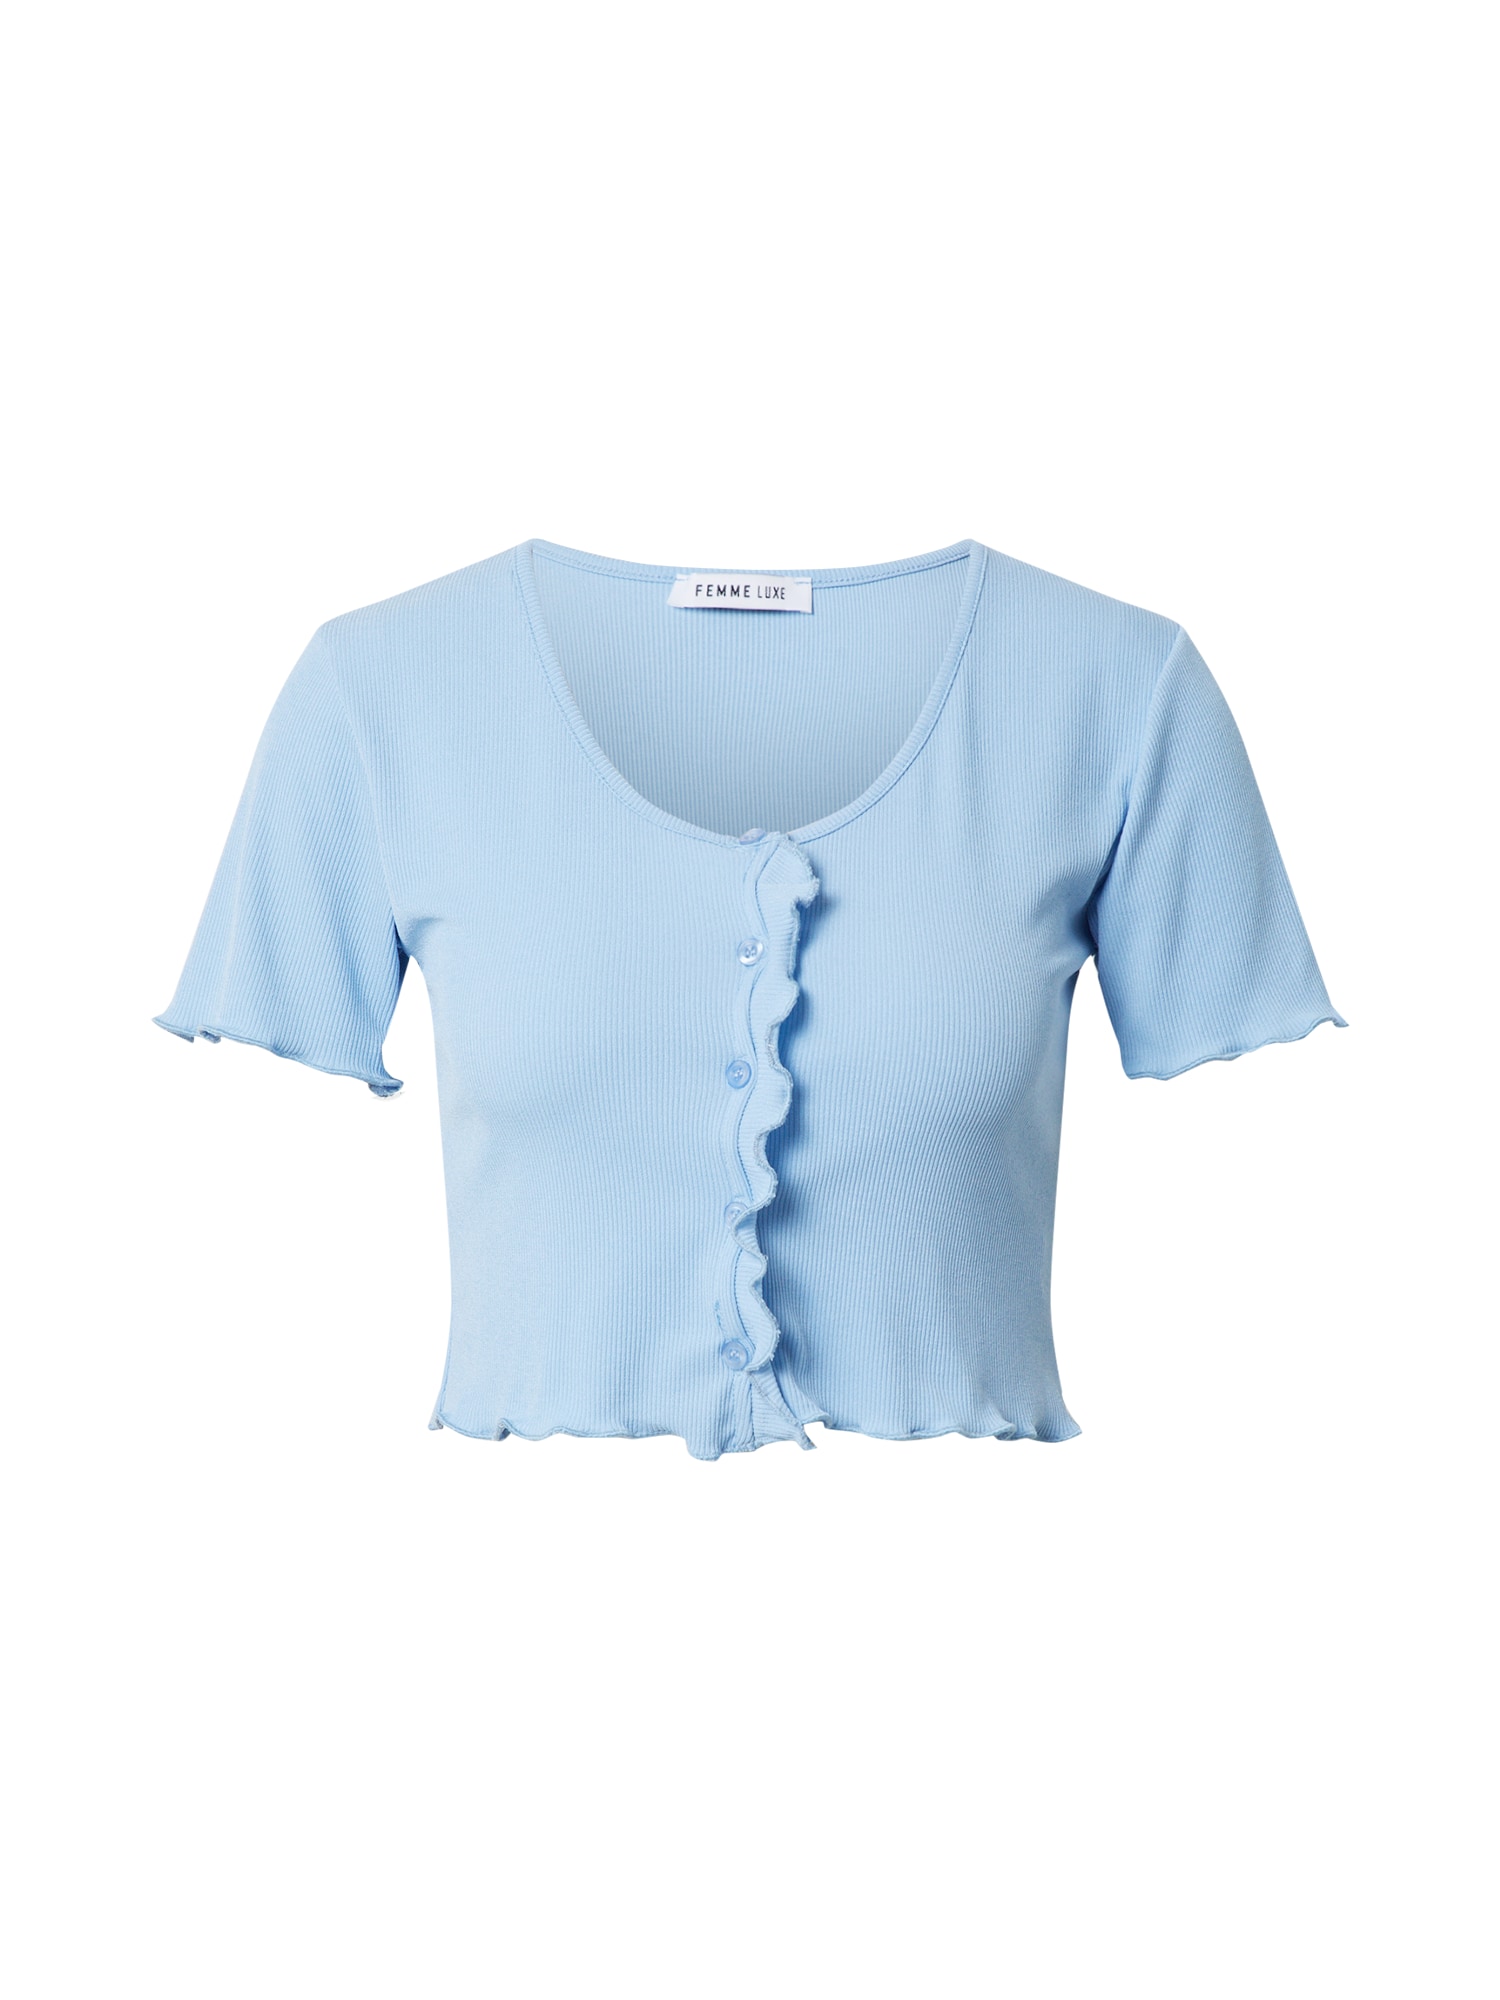 Femme Luxe Marškinėliai 'BRIA' šviesiai mėlyna